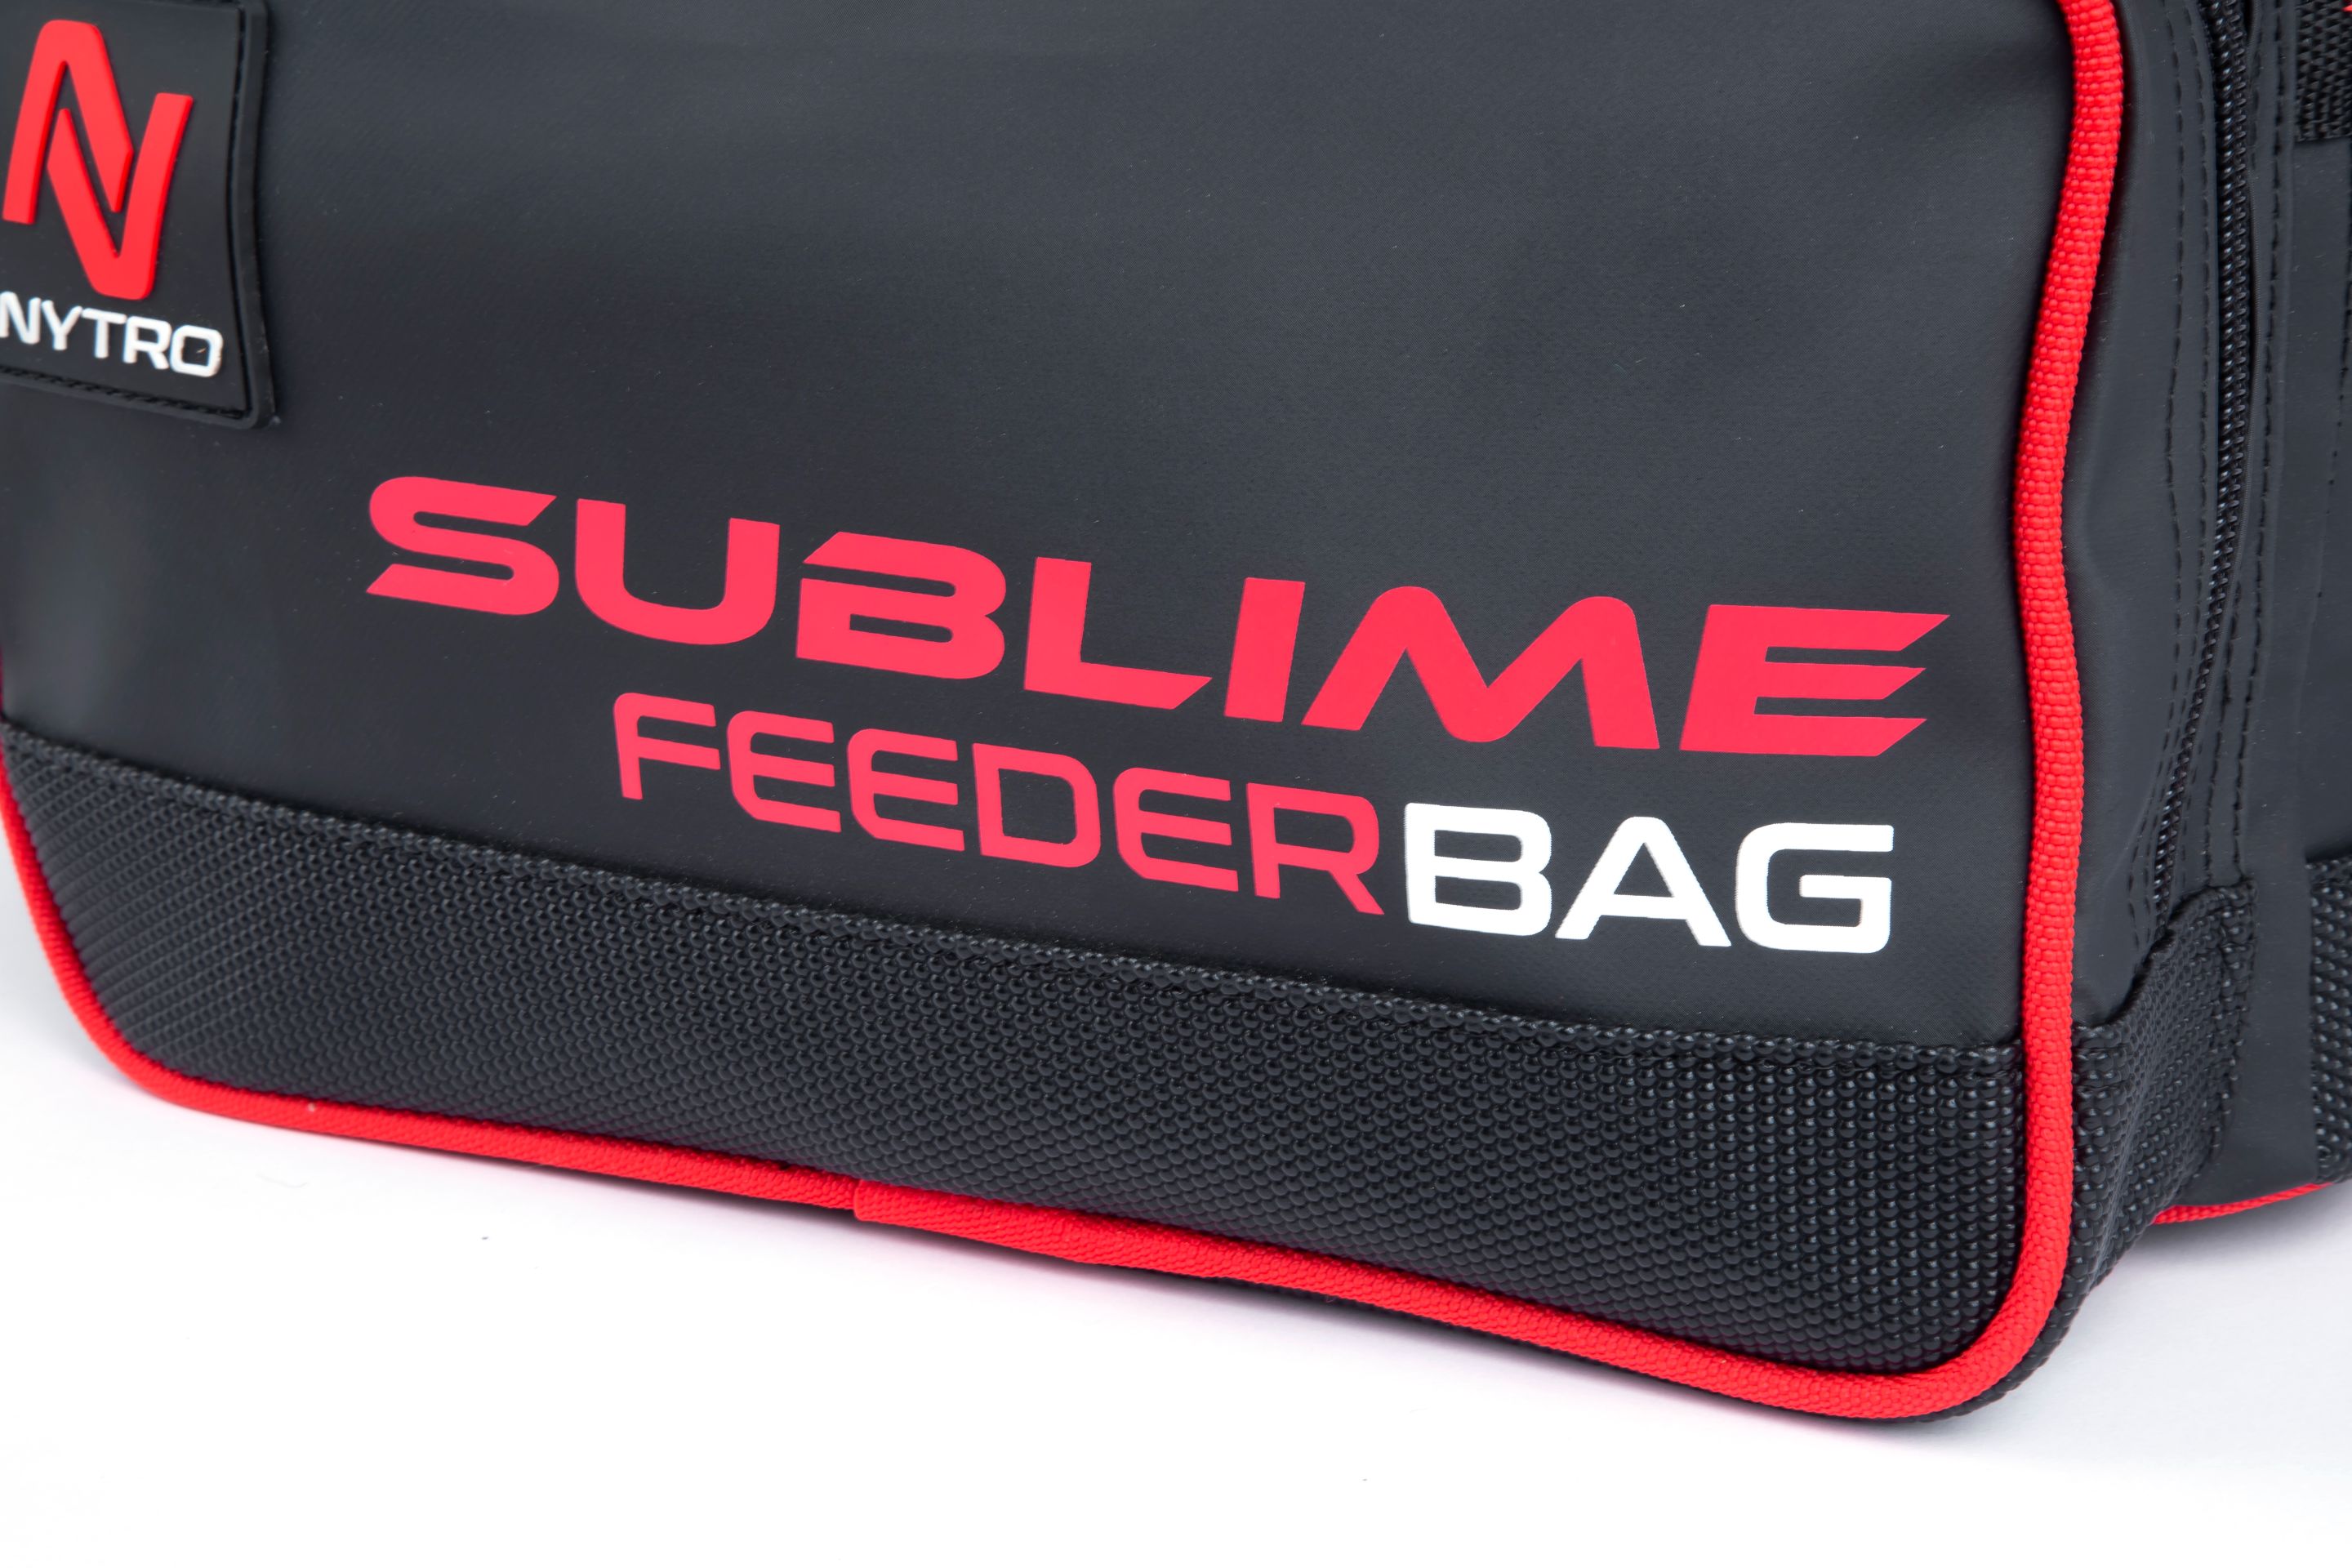 Nytro Sublime Feeder Bag